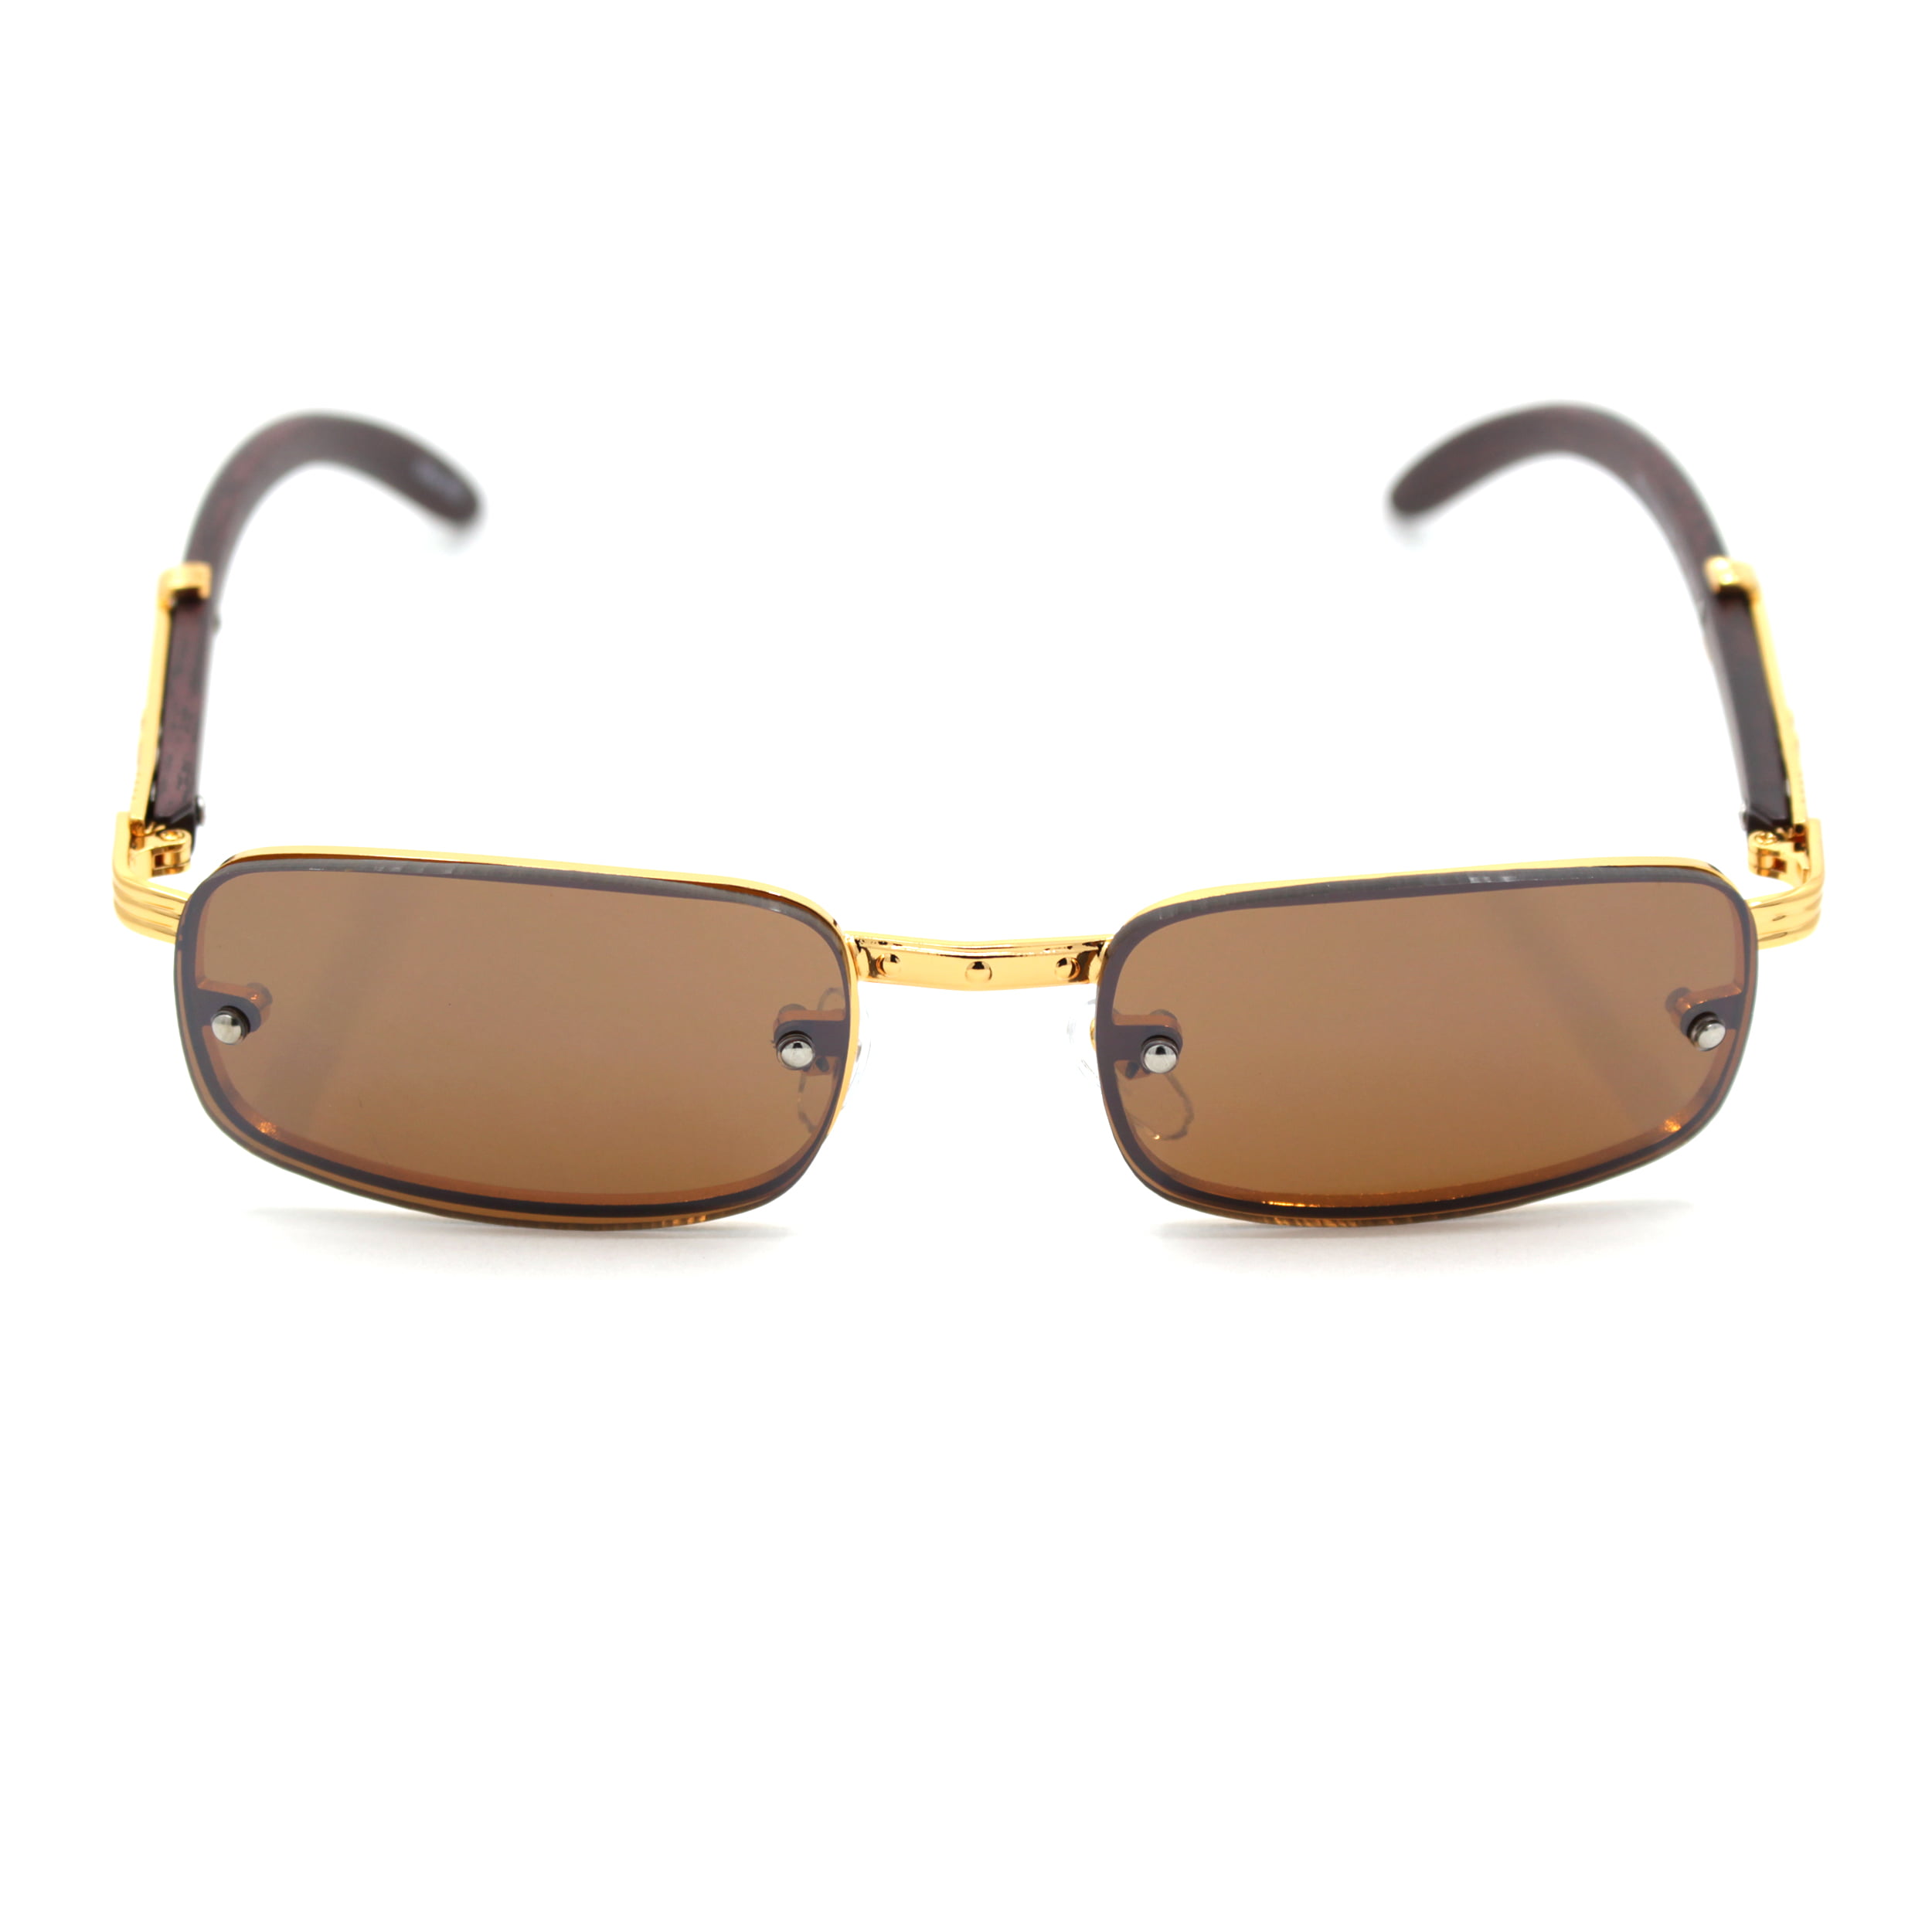 Sa106 Mens Exposed Lens Narrow Rectangular Hustler Og Sunglasses Gold Solid Brown Walmart